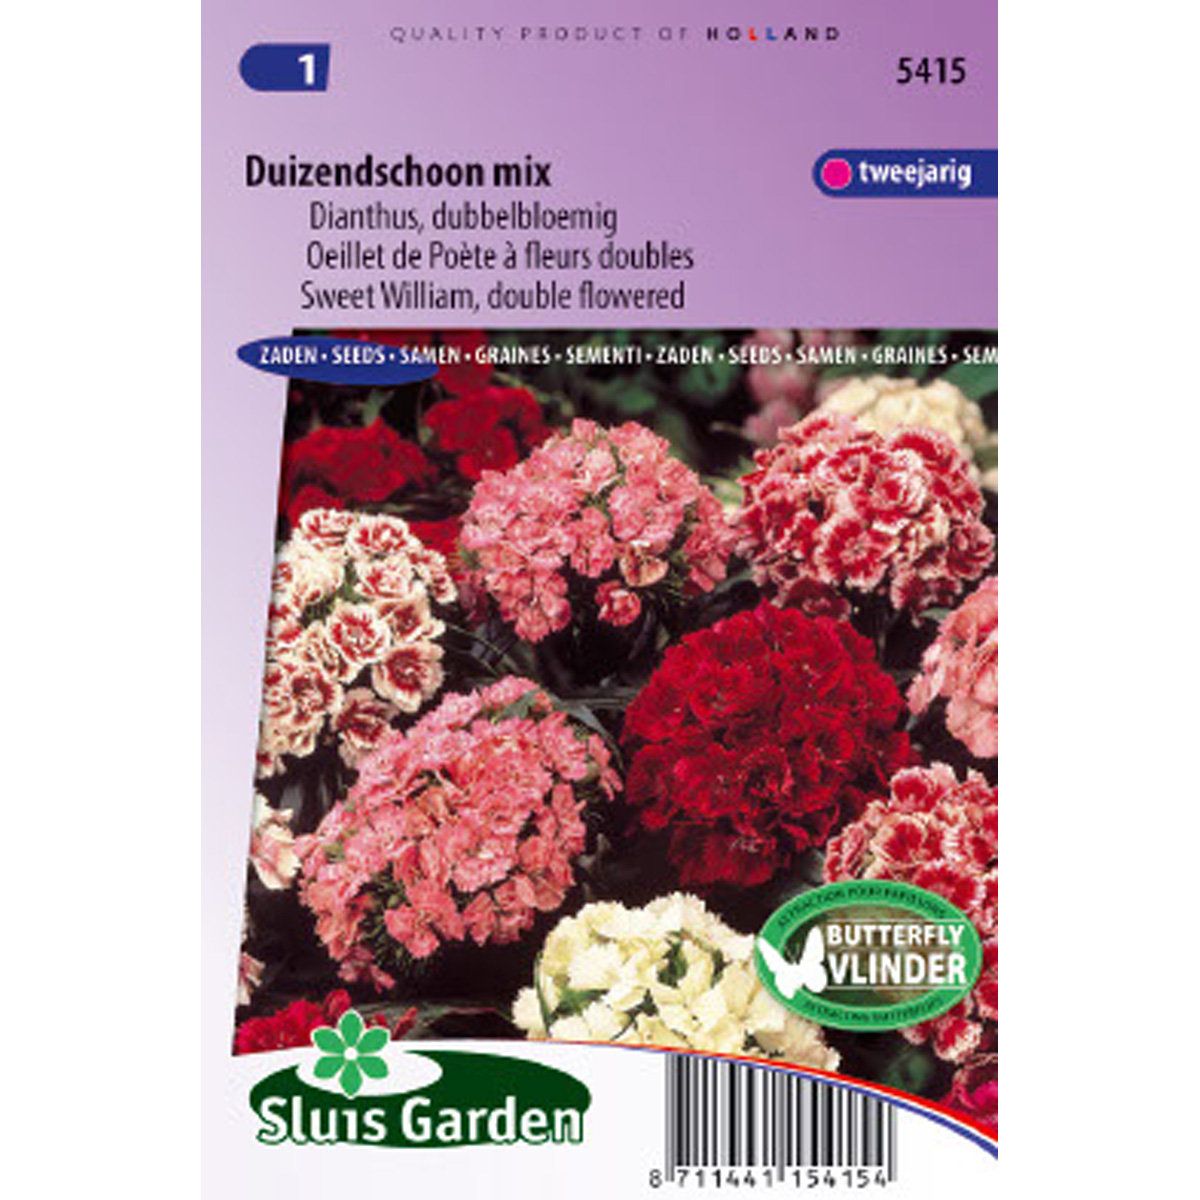 Oeillet de Poète à fleurs doubles en mélange - Dianthus barbatus